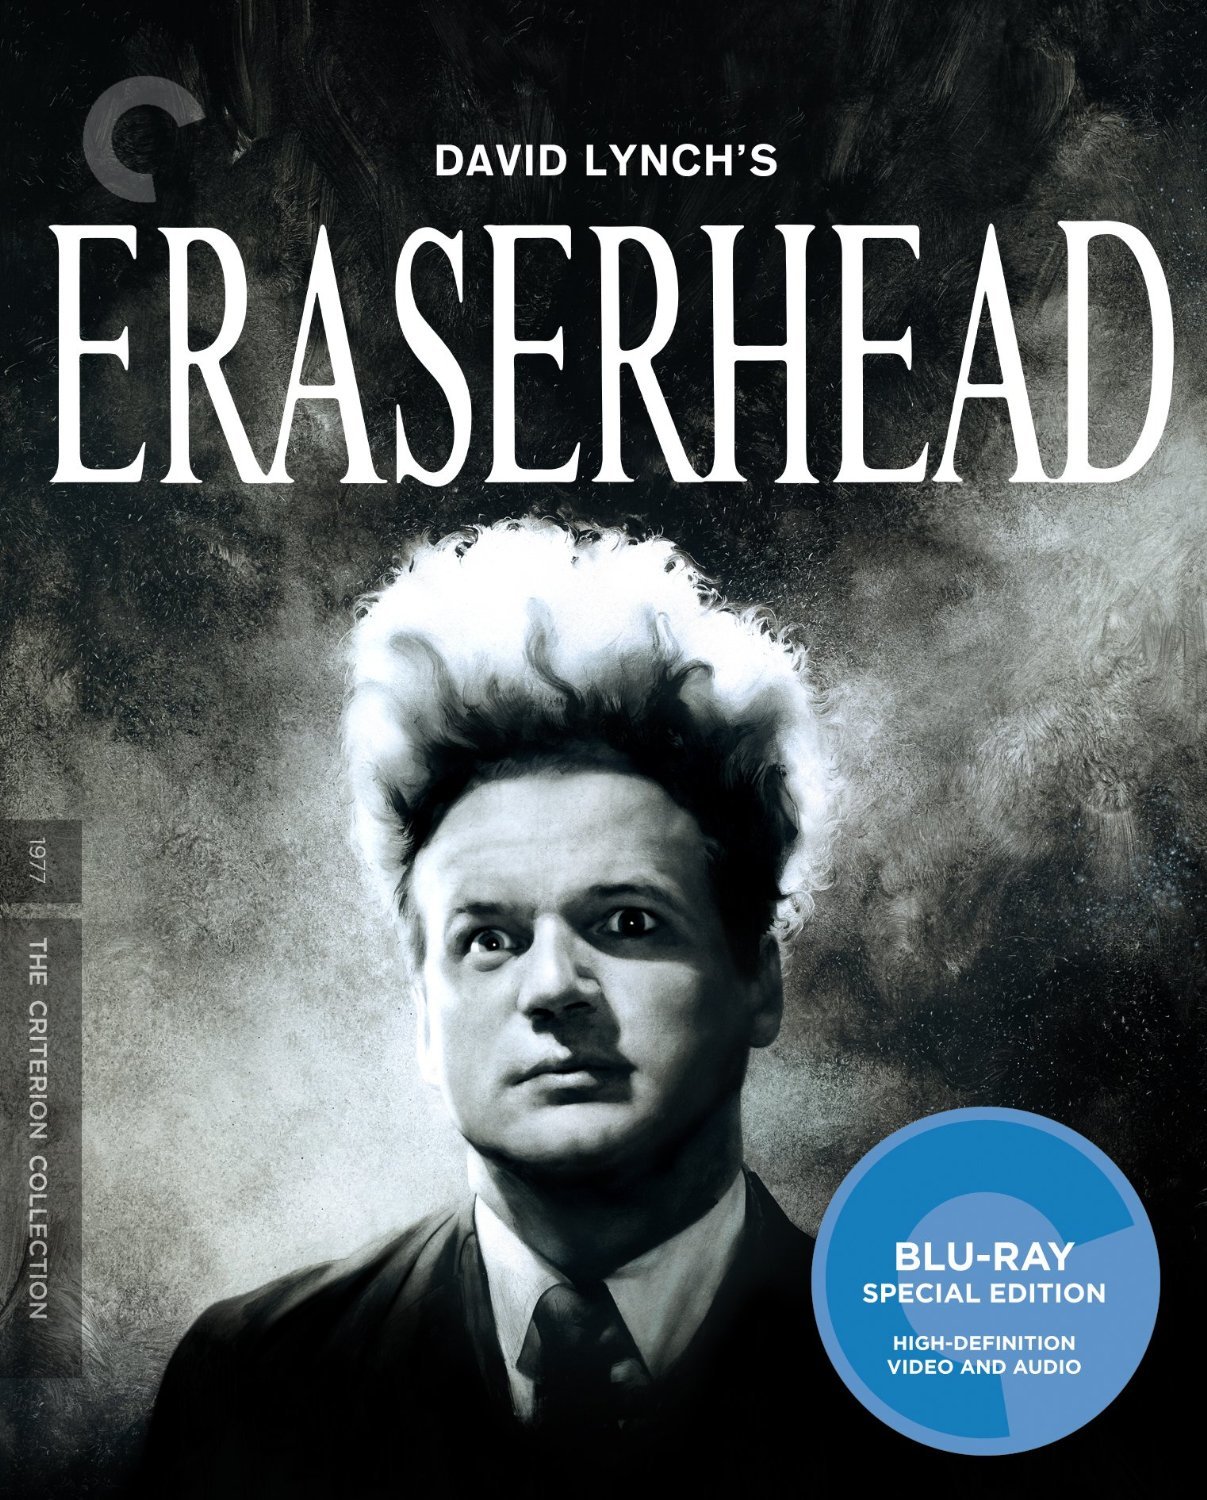 [橡皮头].Eraserhead.1977.CC.BluRay.1080p.AVC.LPCM.2.0-白自在   46.19G-2.jpg